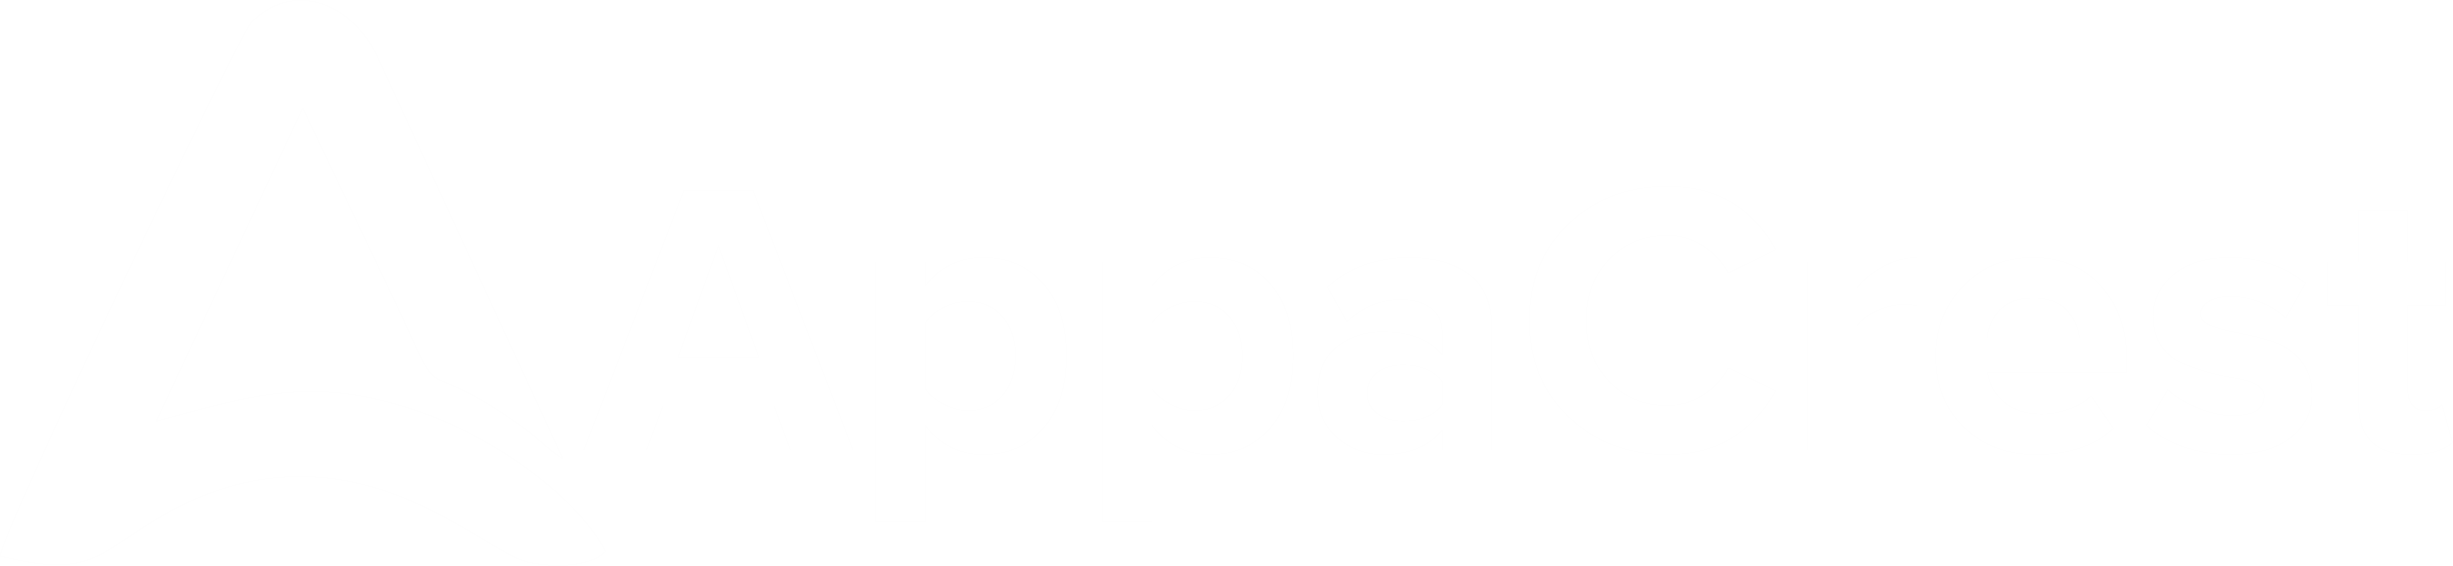 Appa Crest Ltd